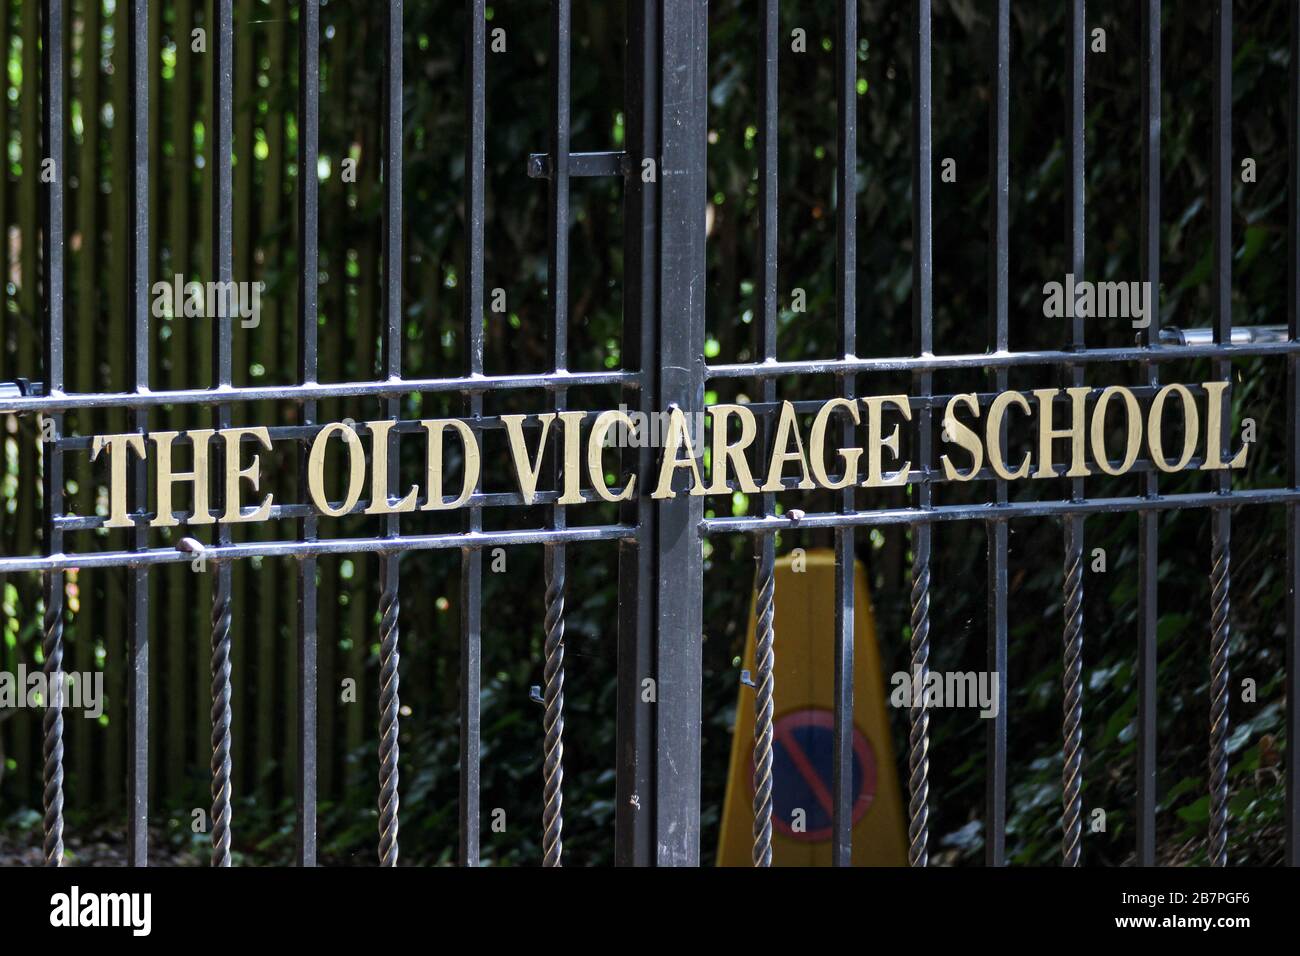 Porte d'entrée de l'Old Vicariage School, une école indépendante de maternelle et de préparation pour les filles et les garçons à Derby, Angleterre, Grande-Bretagne, Royaume-Uni Banque D'Images